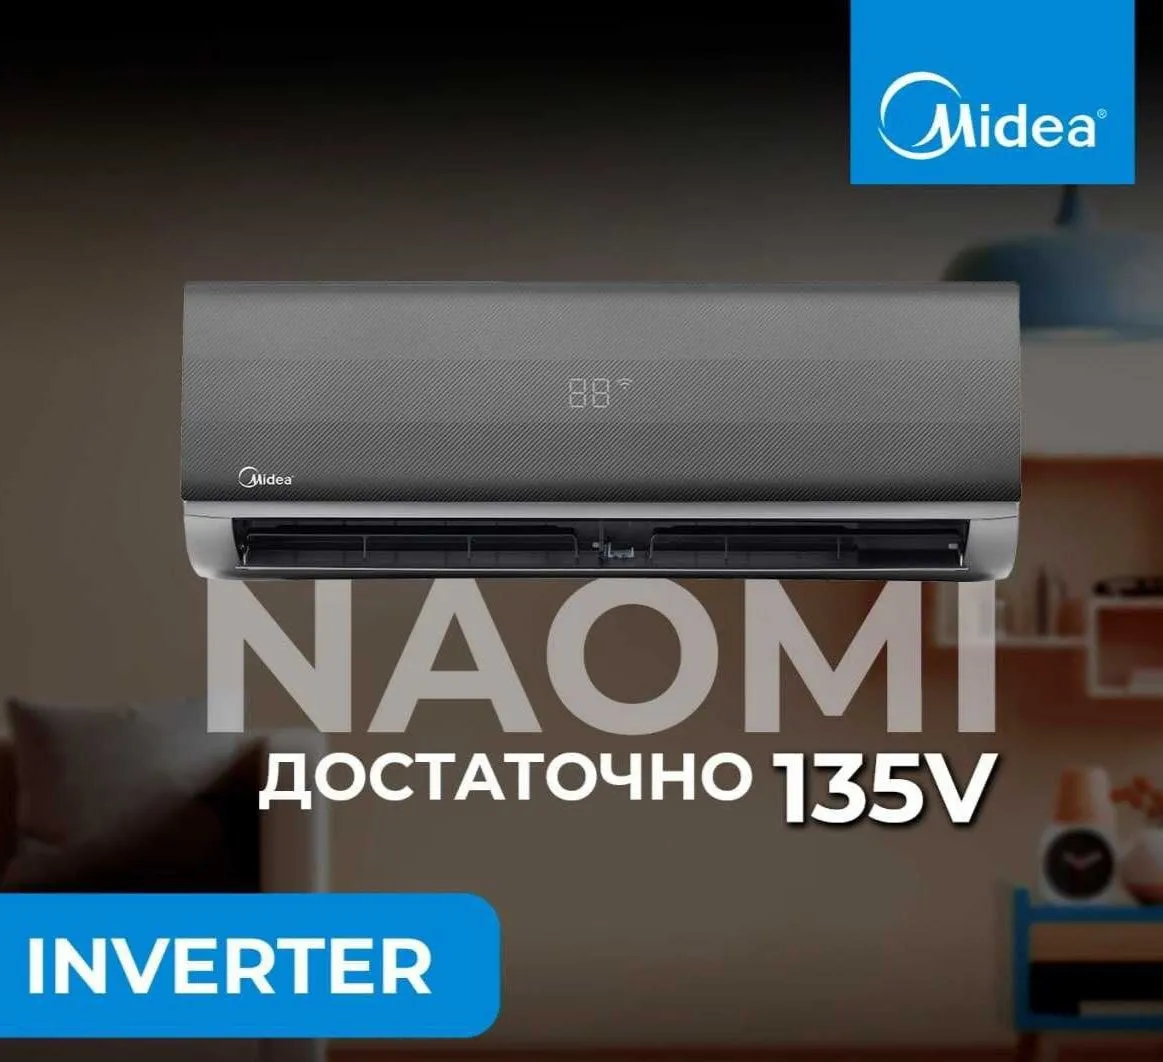 Кондиционер Midea Naomi 7 Low voltage Inverter#1